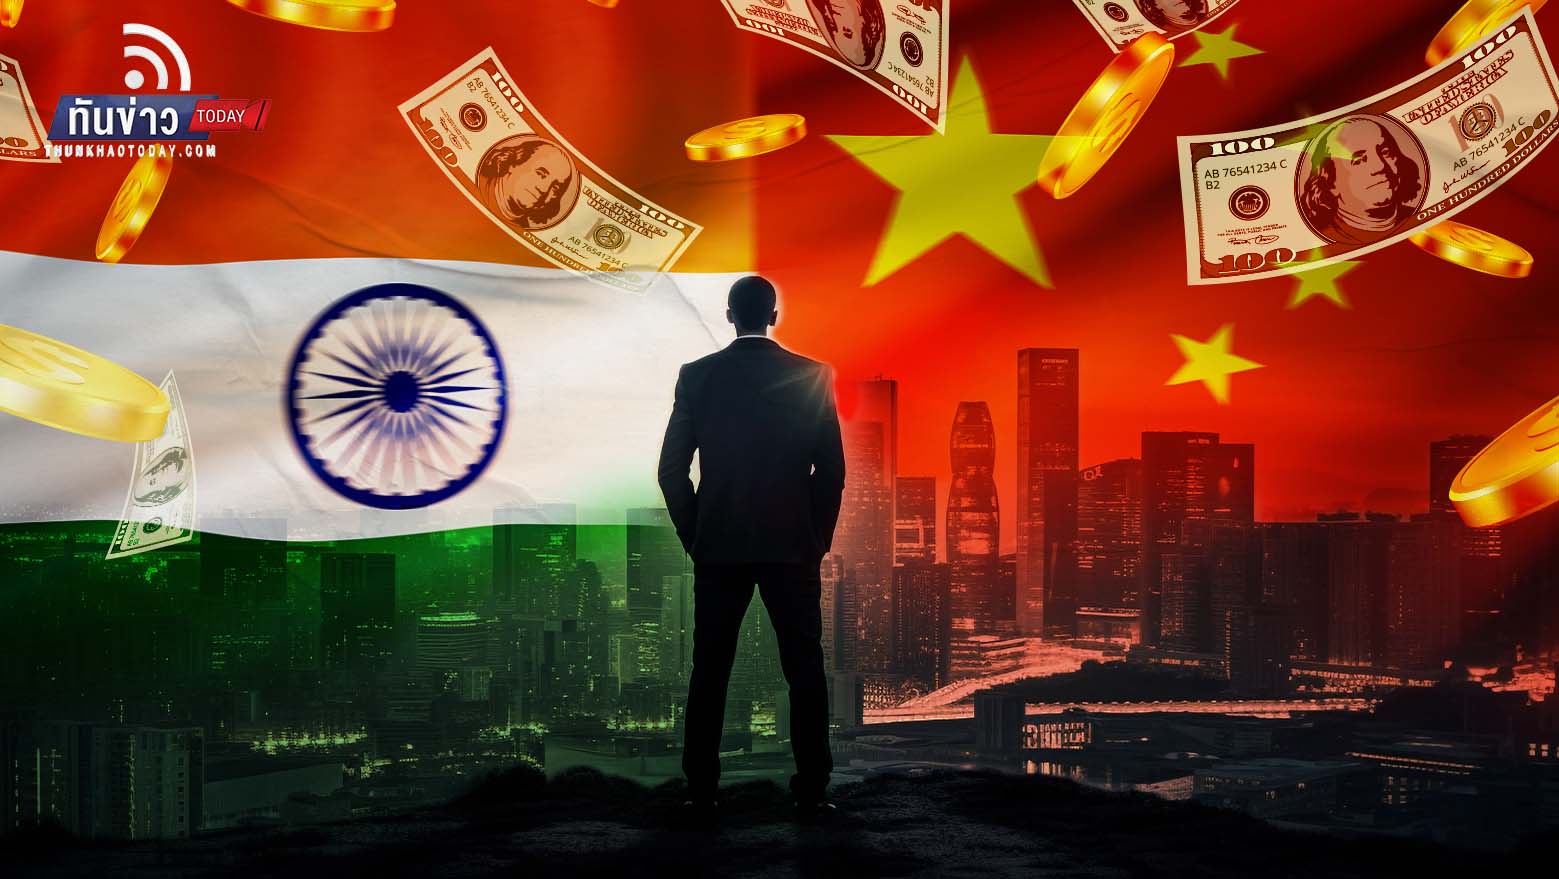 เปิด 10 มหาเศรษฐีเอเชีย อินเดีย - จีน รวยสุด !